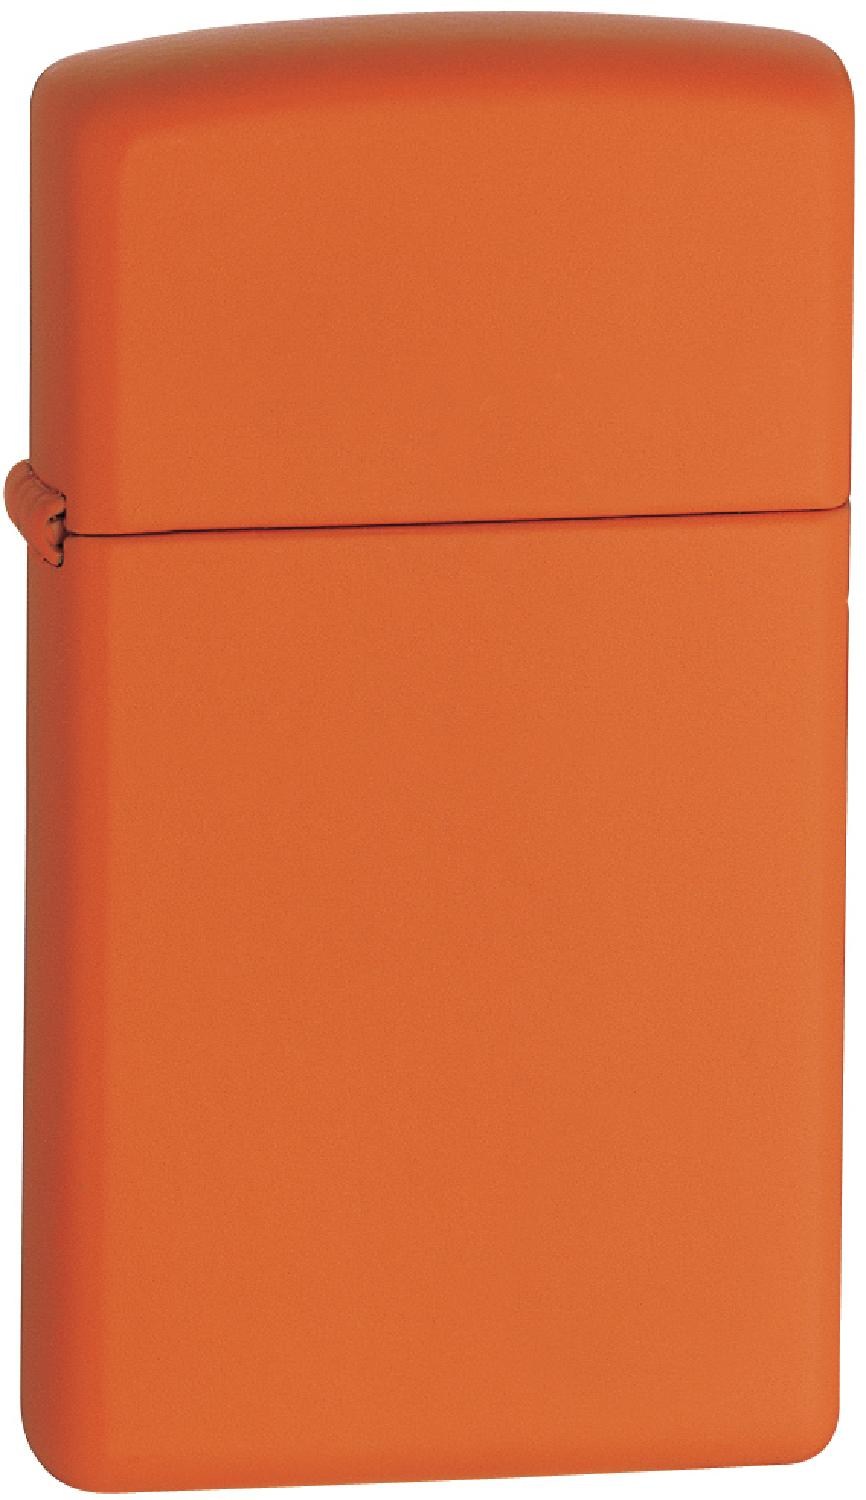 Ветрозащитная зажигалка Zippo, оранжевый edc креативная шариковая ручка зажигалка струйная газовая зажигалка ветрозащитная металлическая бутановая зажигалка 1300c гаджеты для мужч